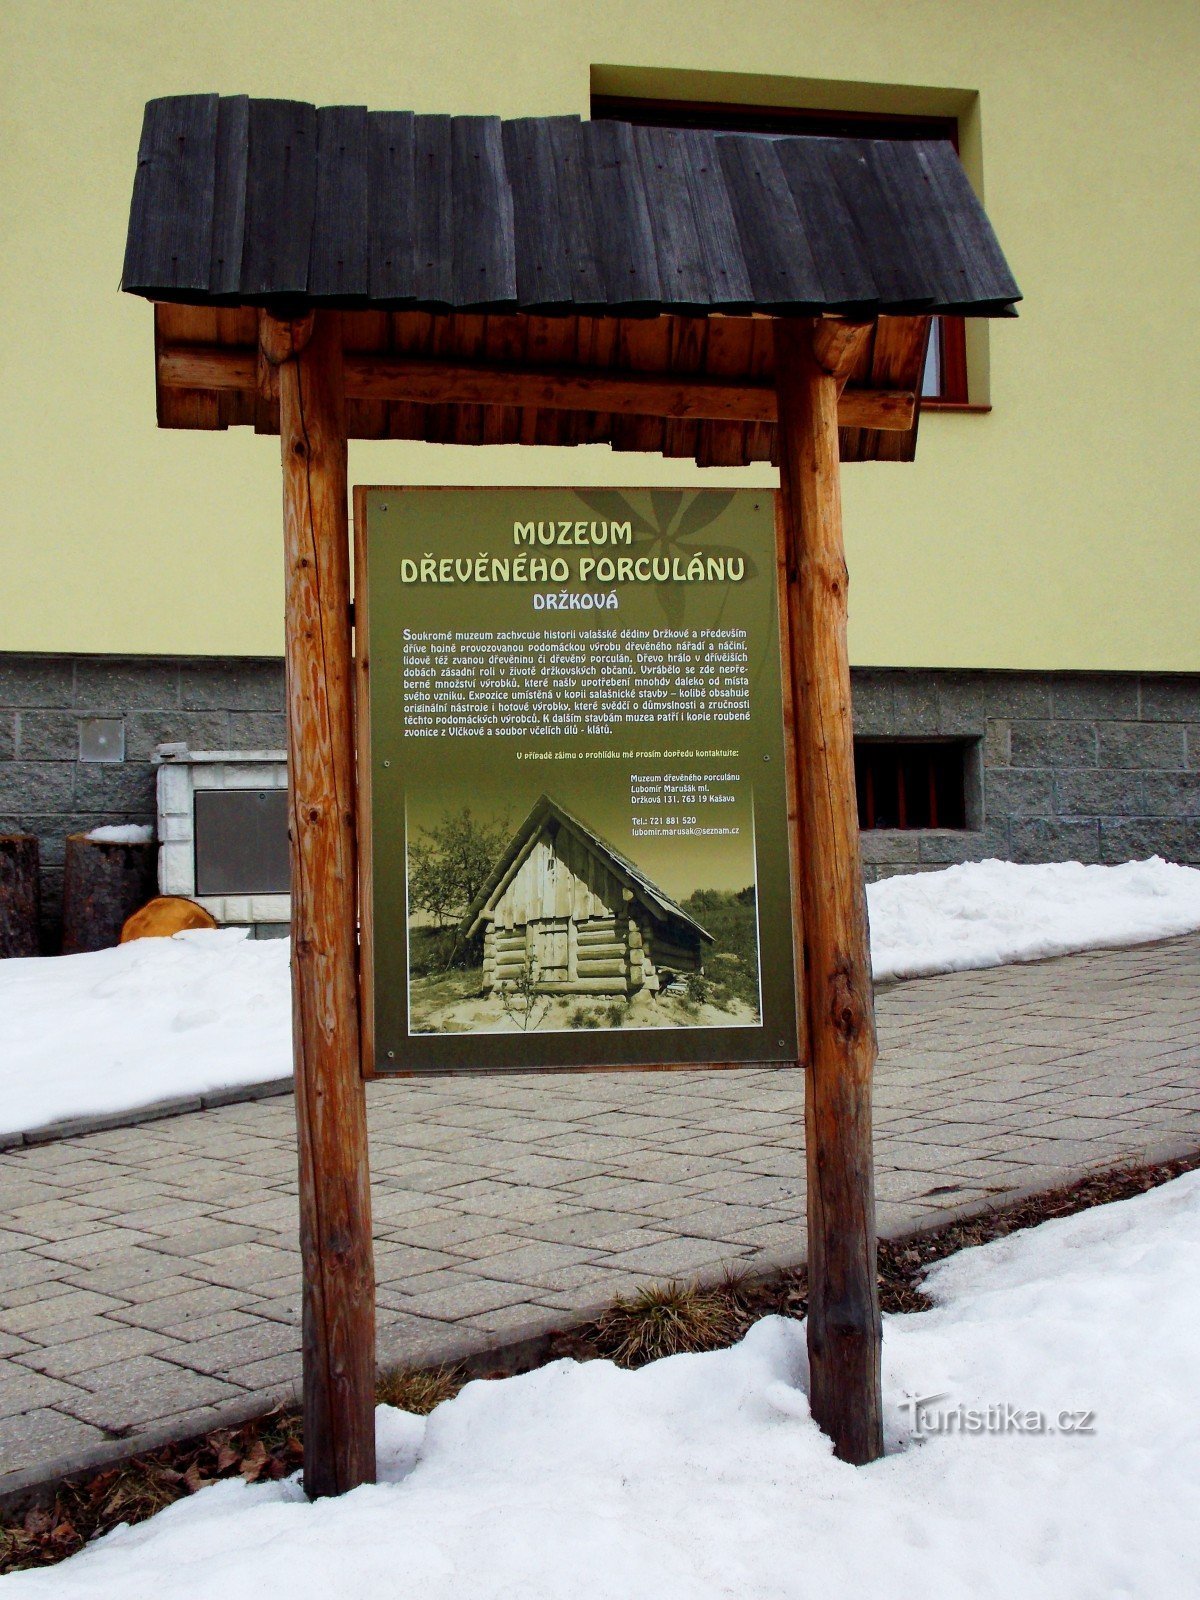 Đến bảo tàng đồ sứ bằng gỗ ở Držková gần Zlín